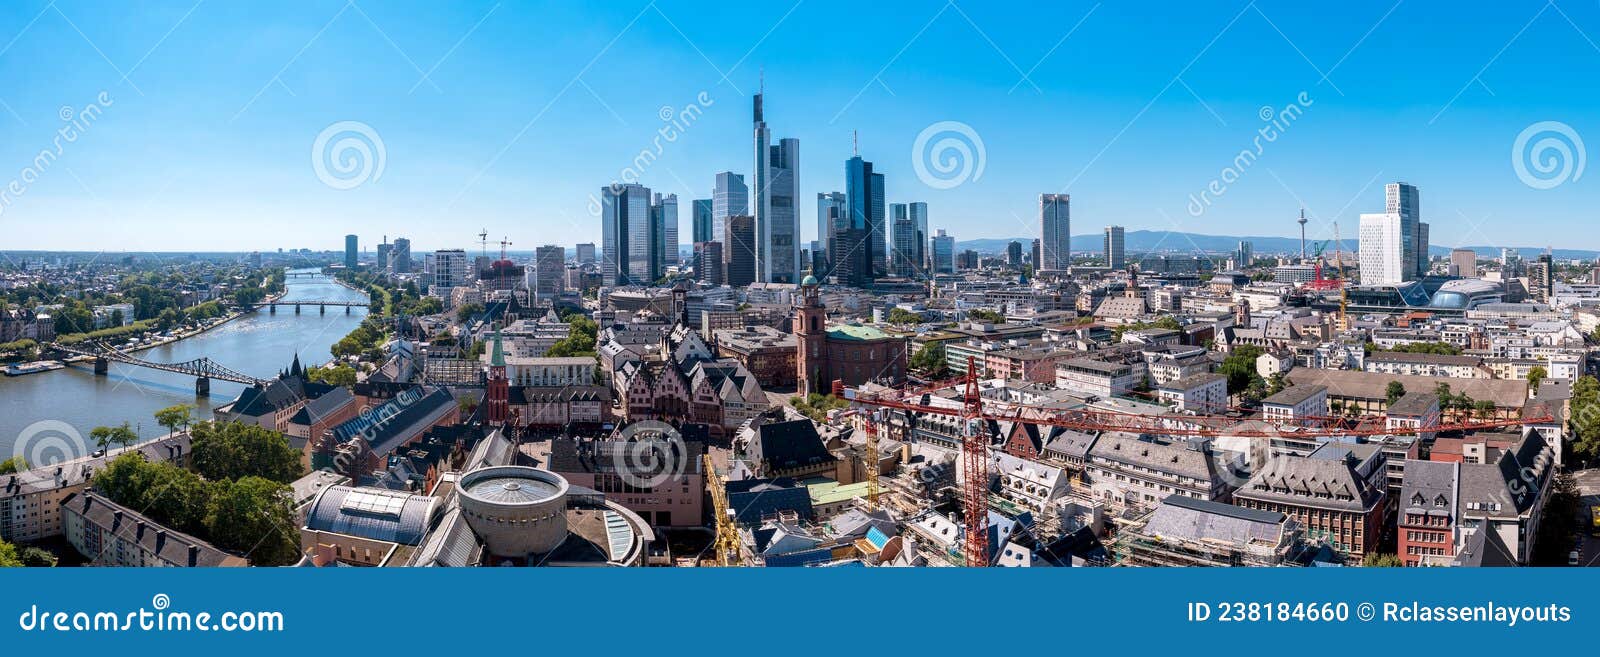 skyline frankfurt panorama